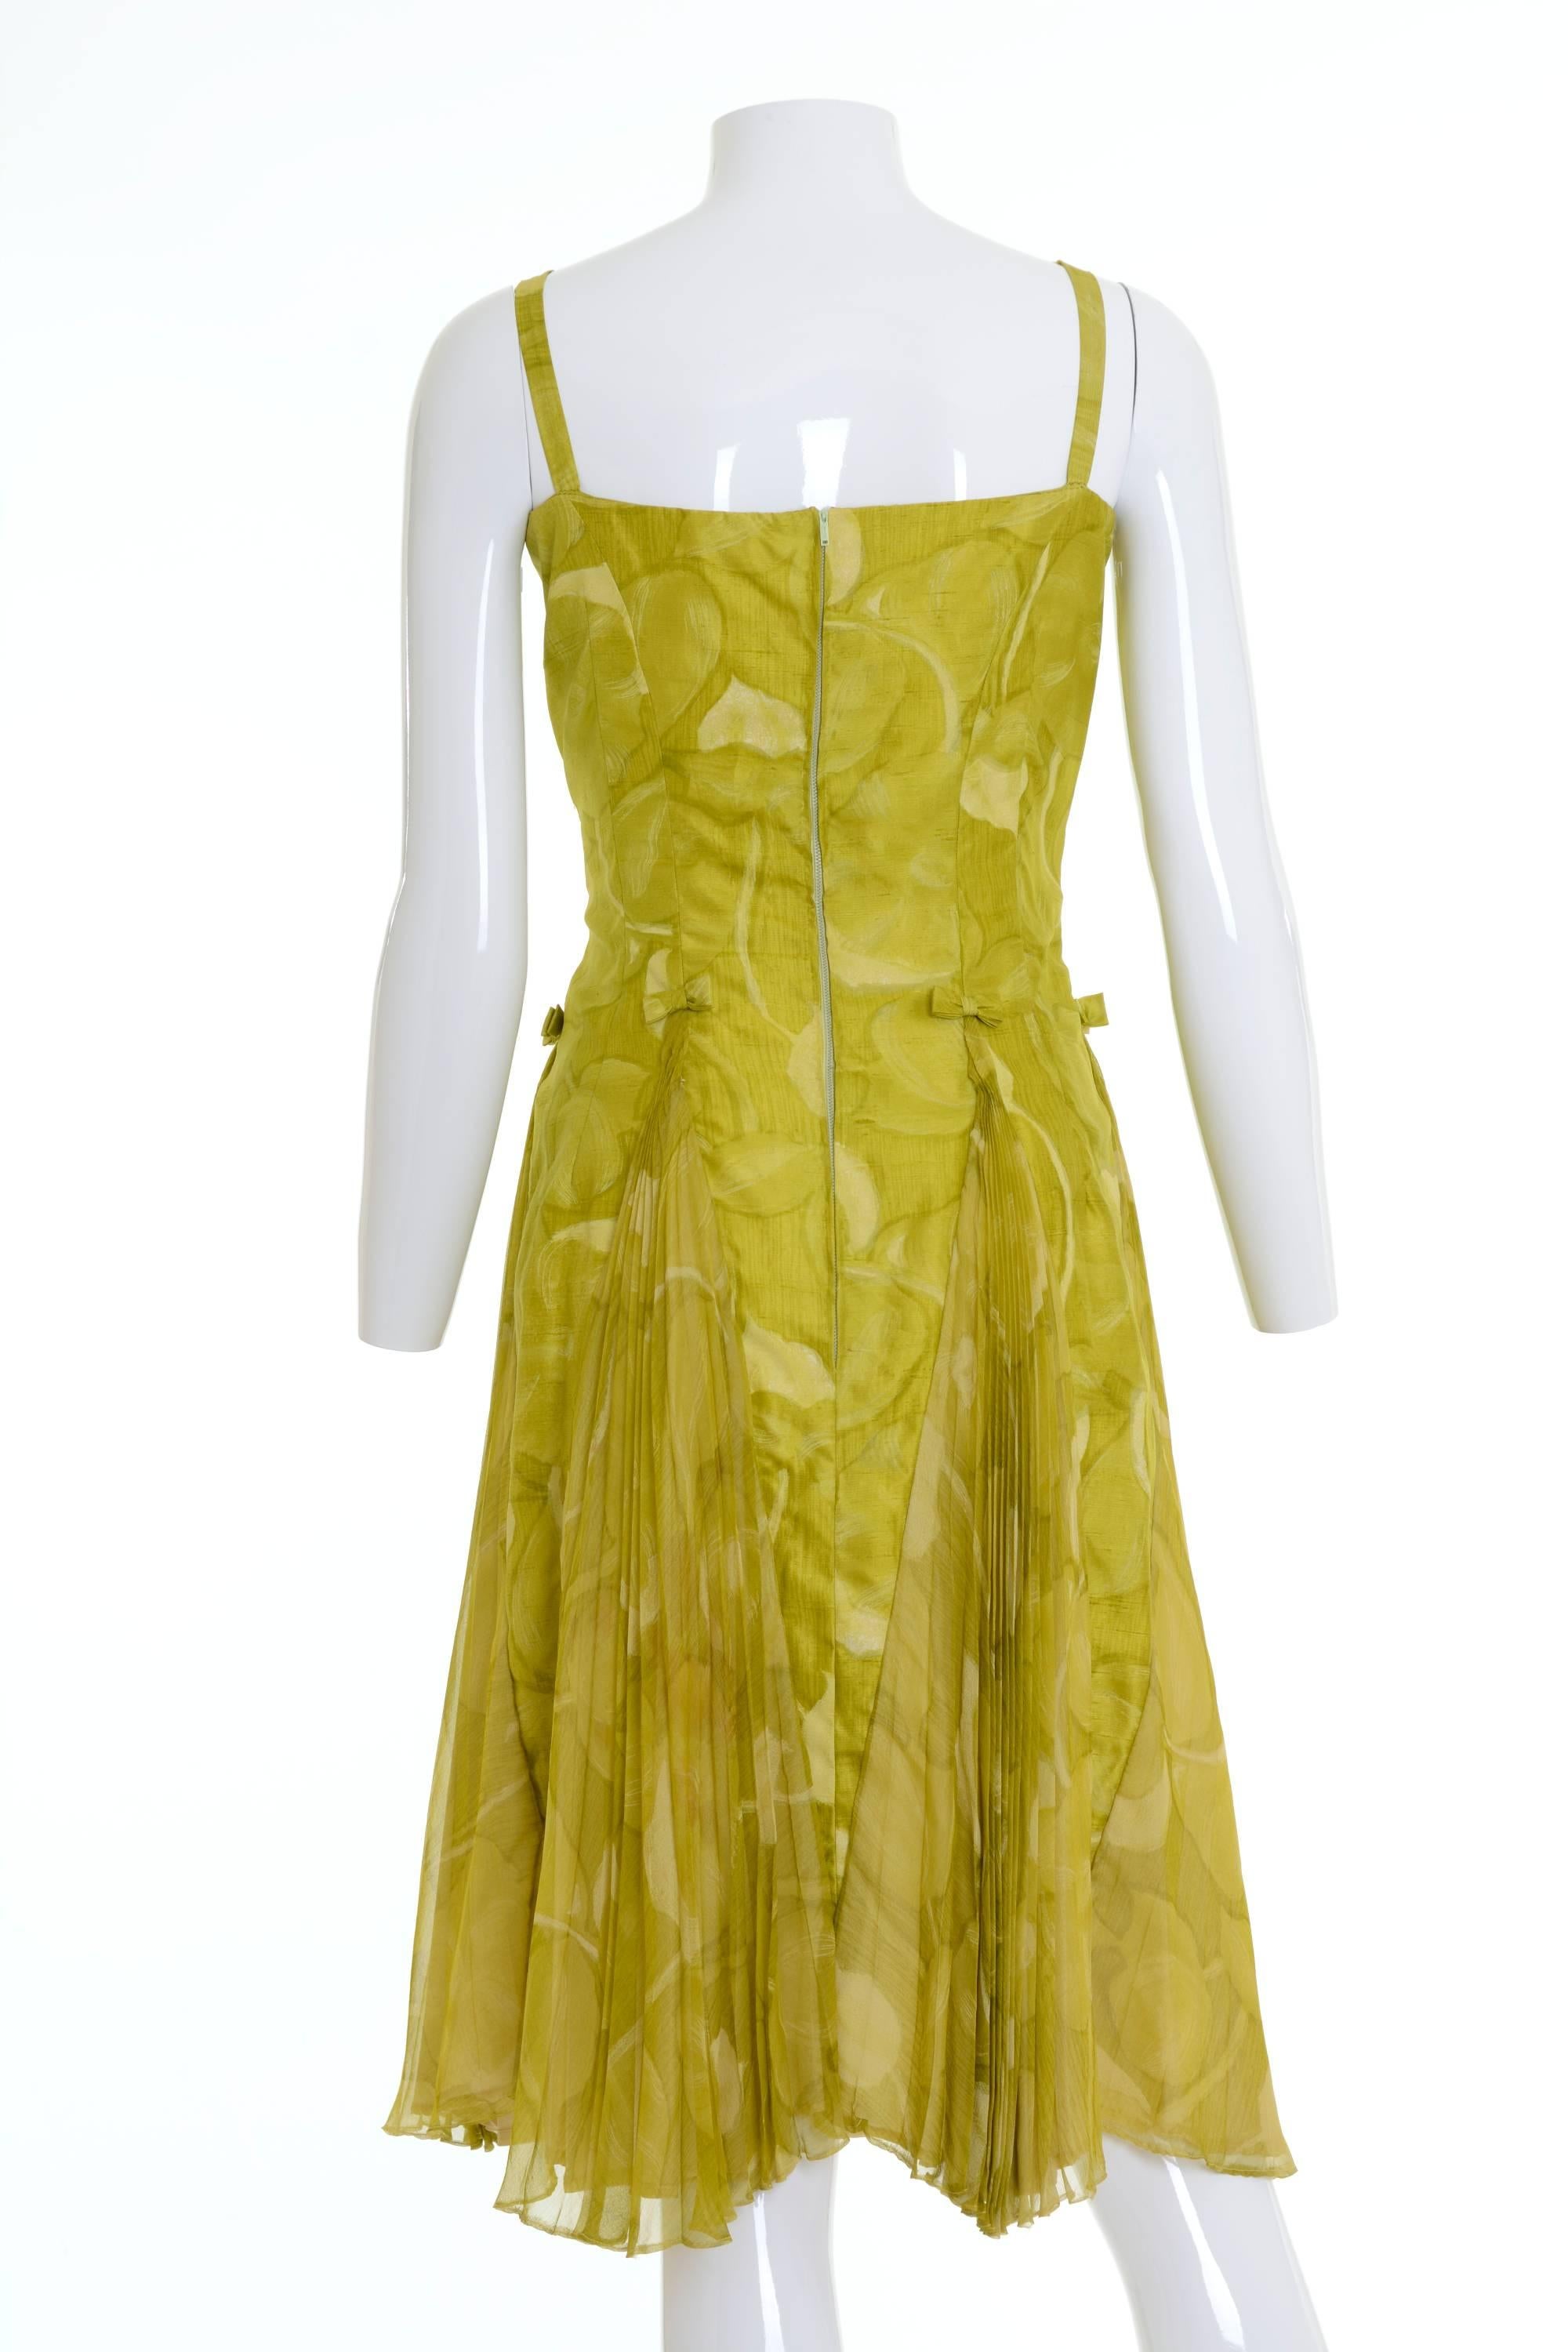 Brown 1950s Italian Couture Floral Print Cocktail Suit Pleateds Bolero Suit Dress For Sale